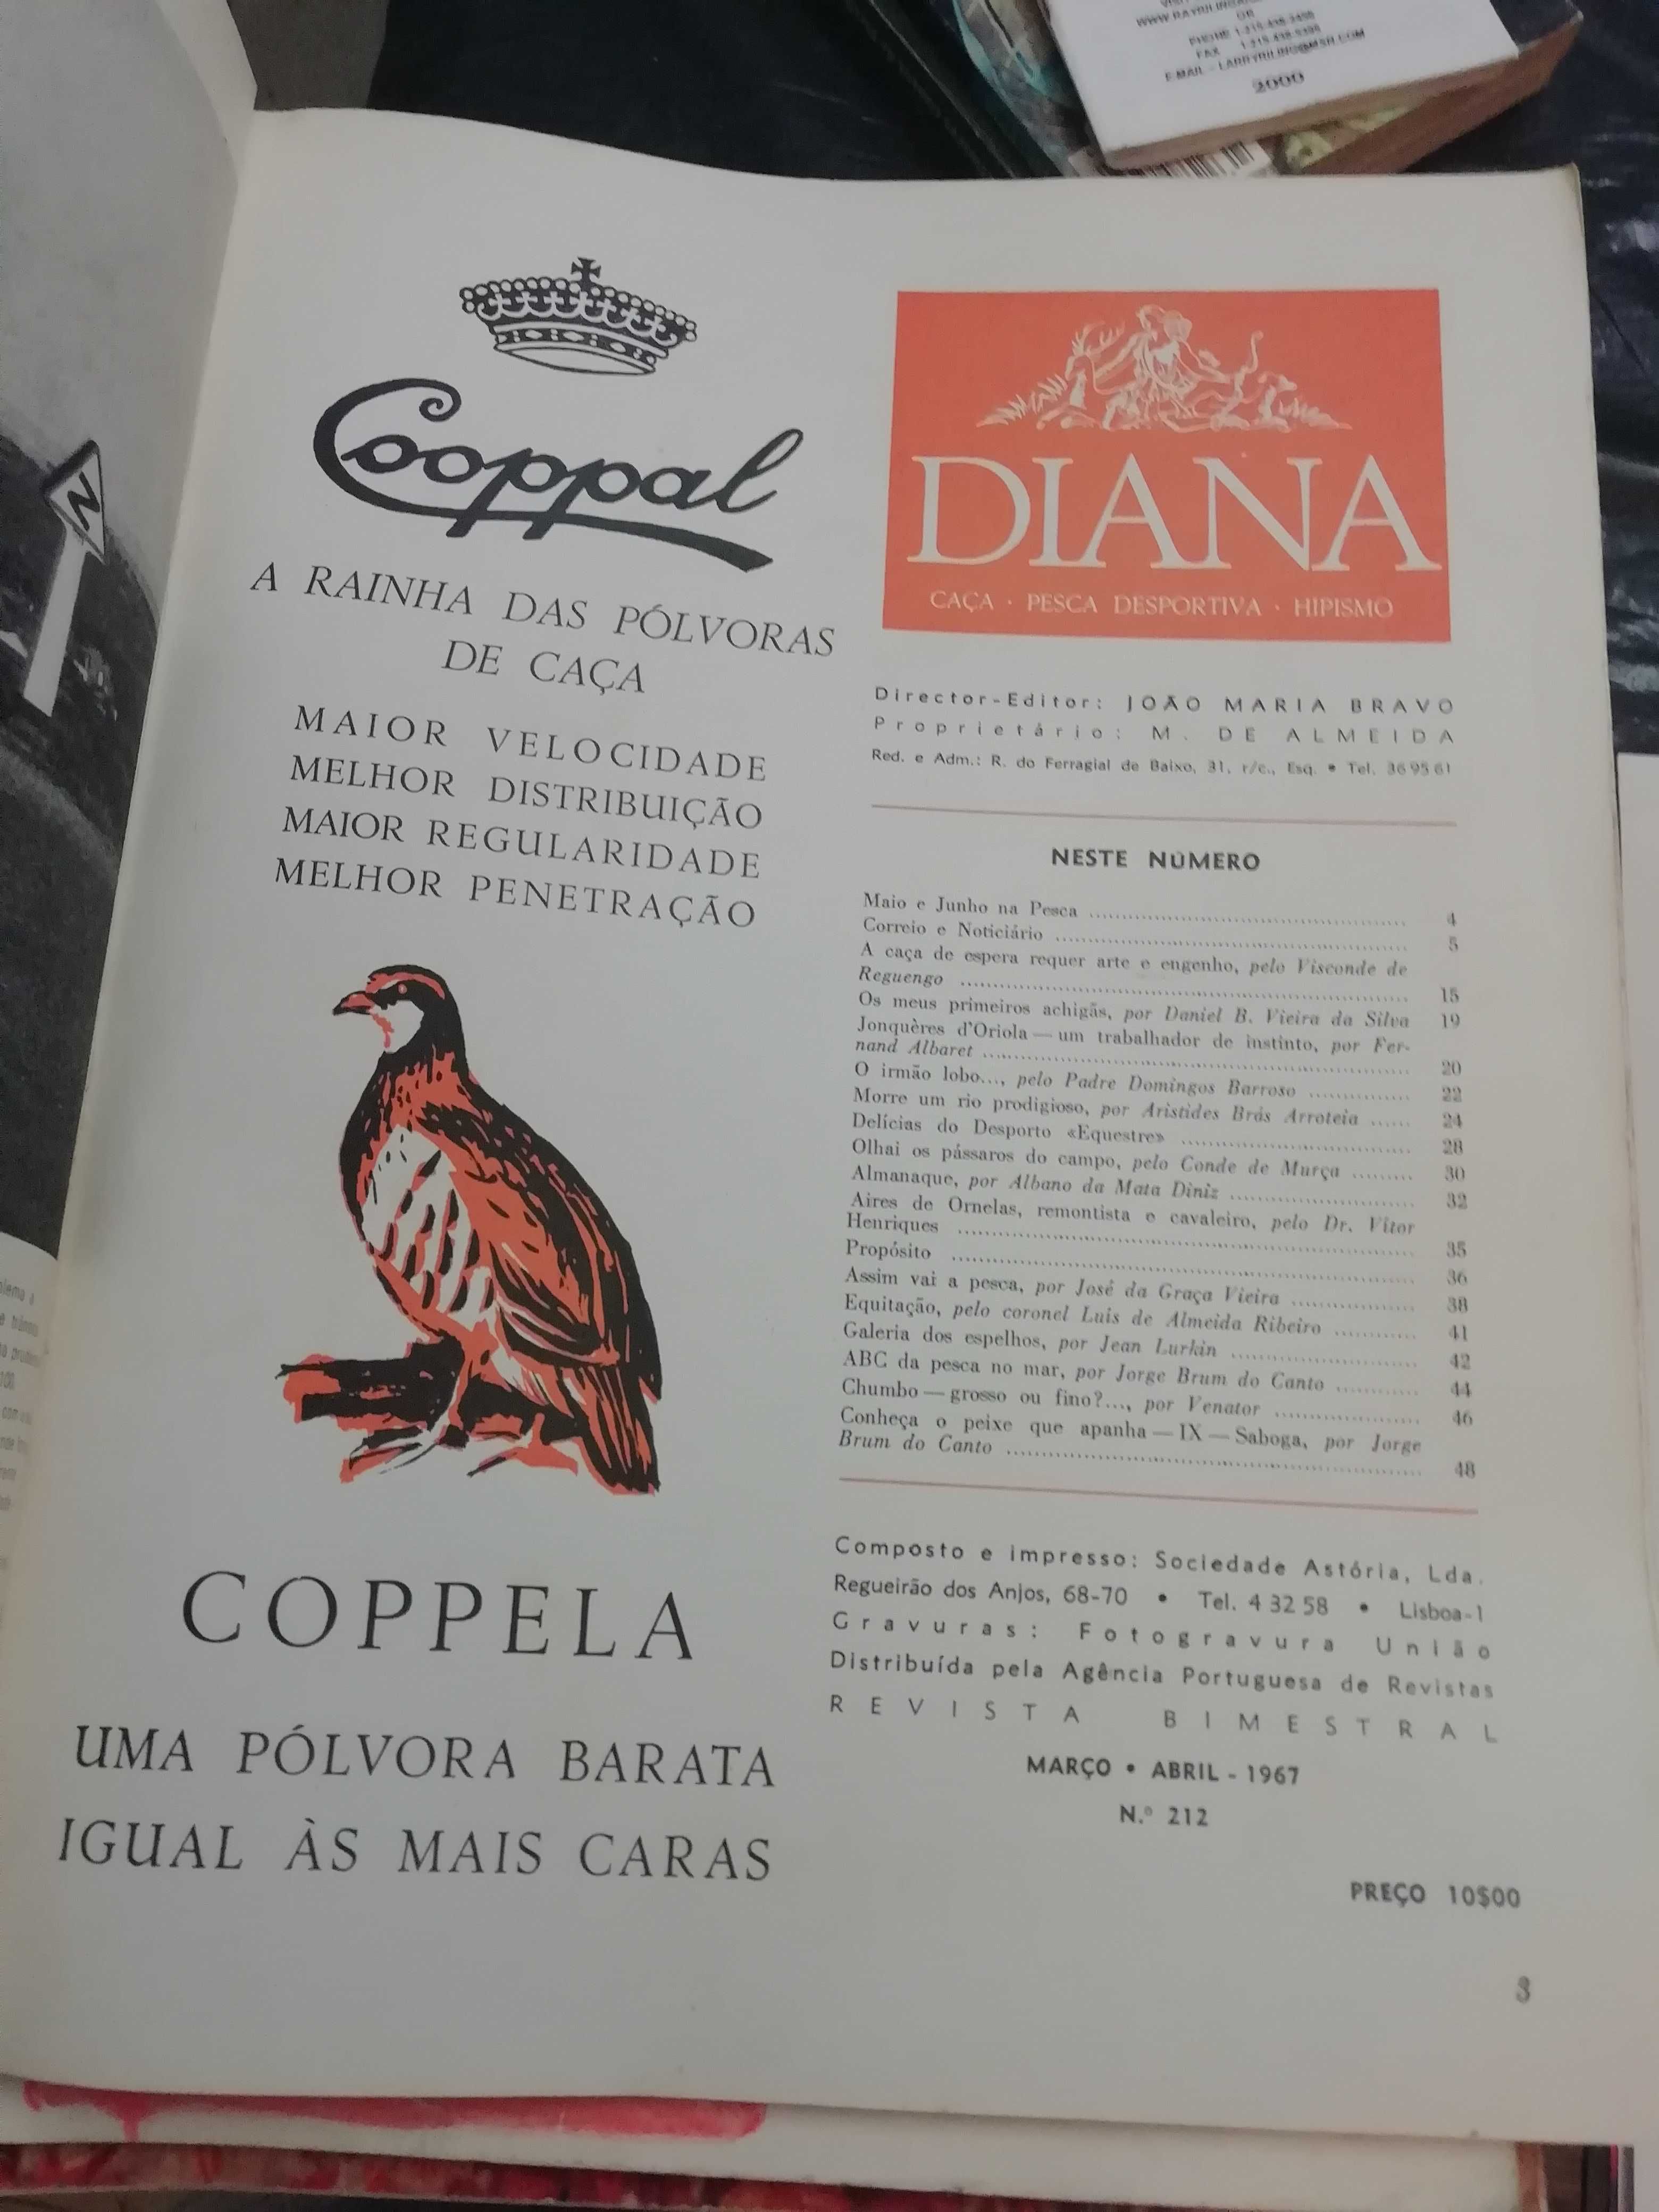 DIANA - Revista de Caça, Hipismo e Pesca - coleção de 197 volumes